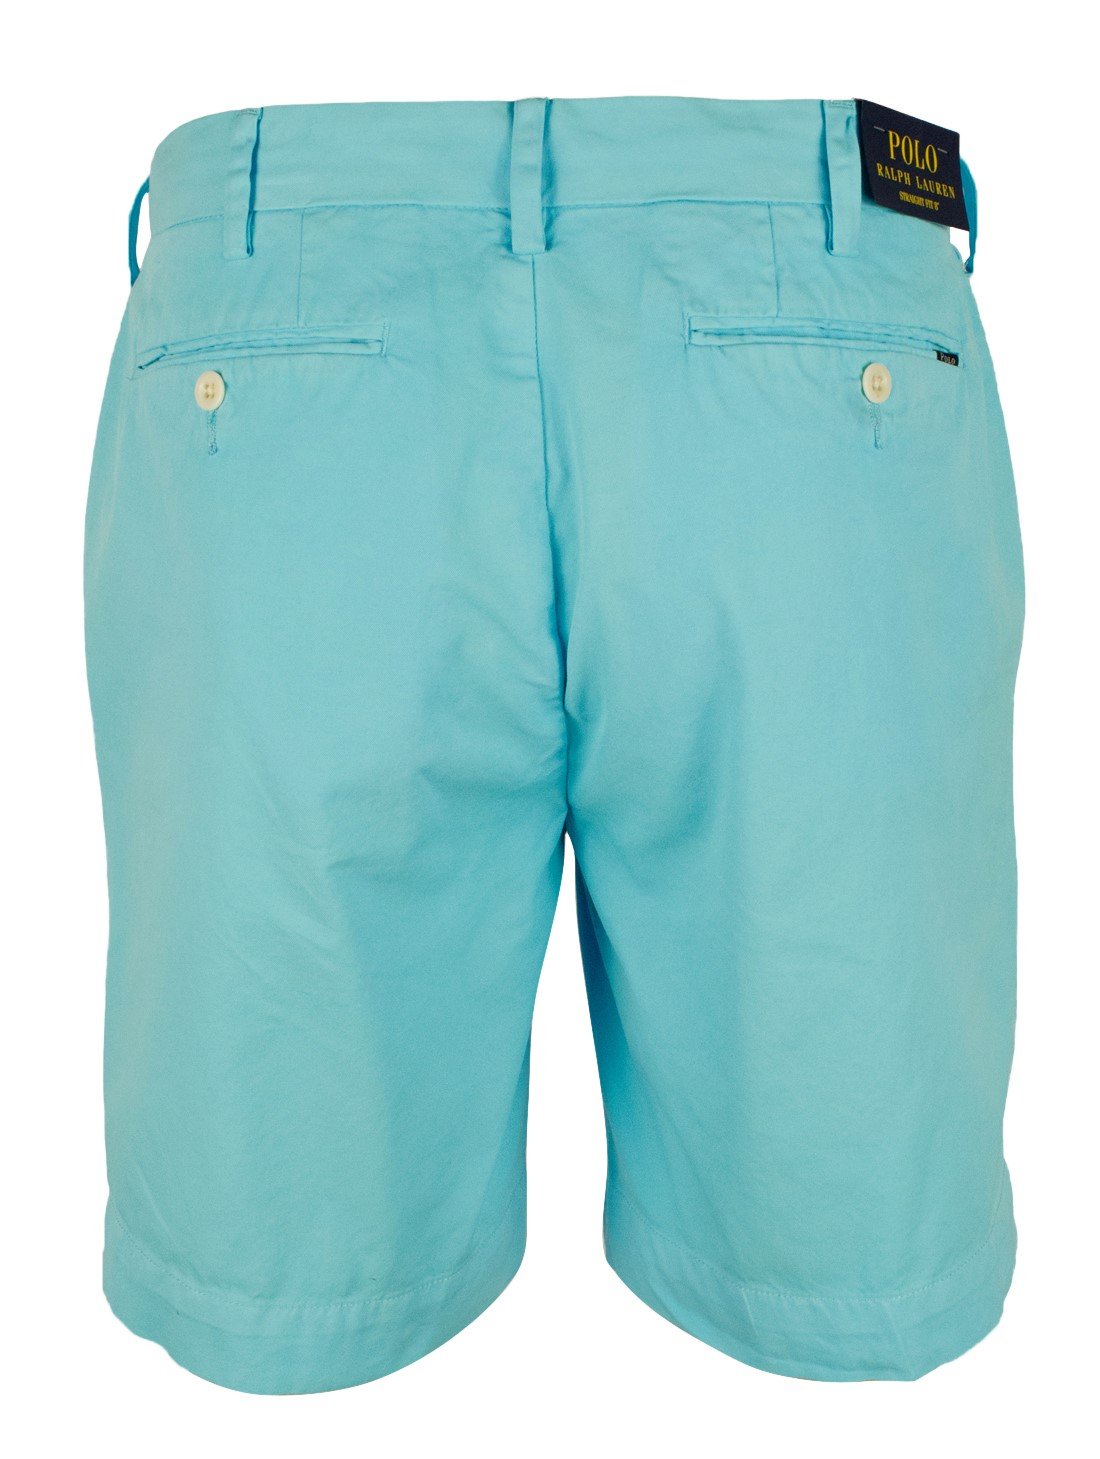 Polo Ralph Lauren mens Flat-front-shorts